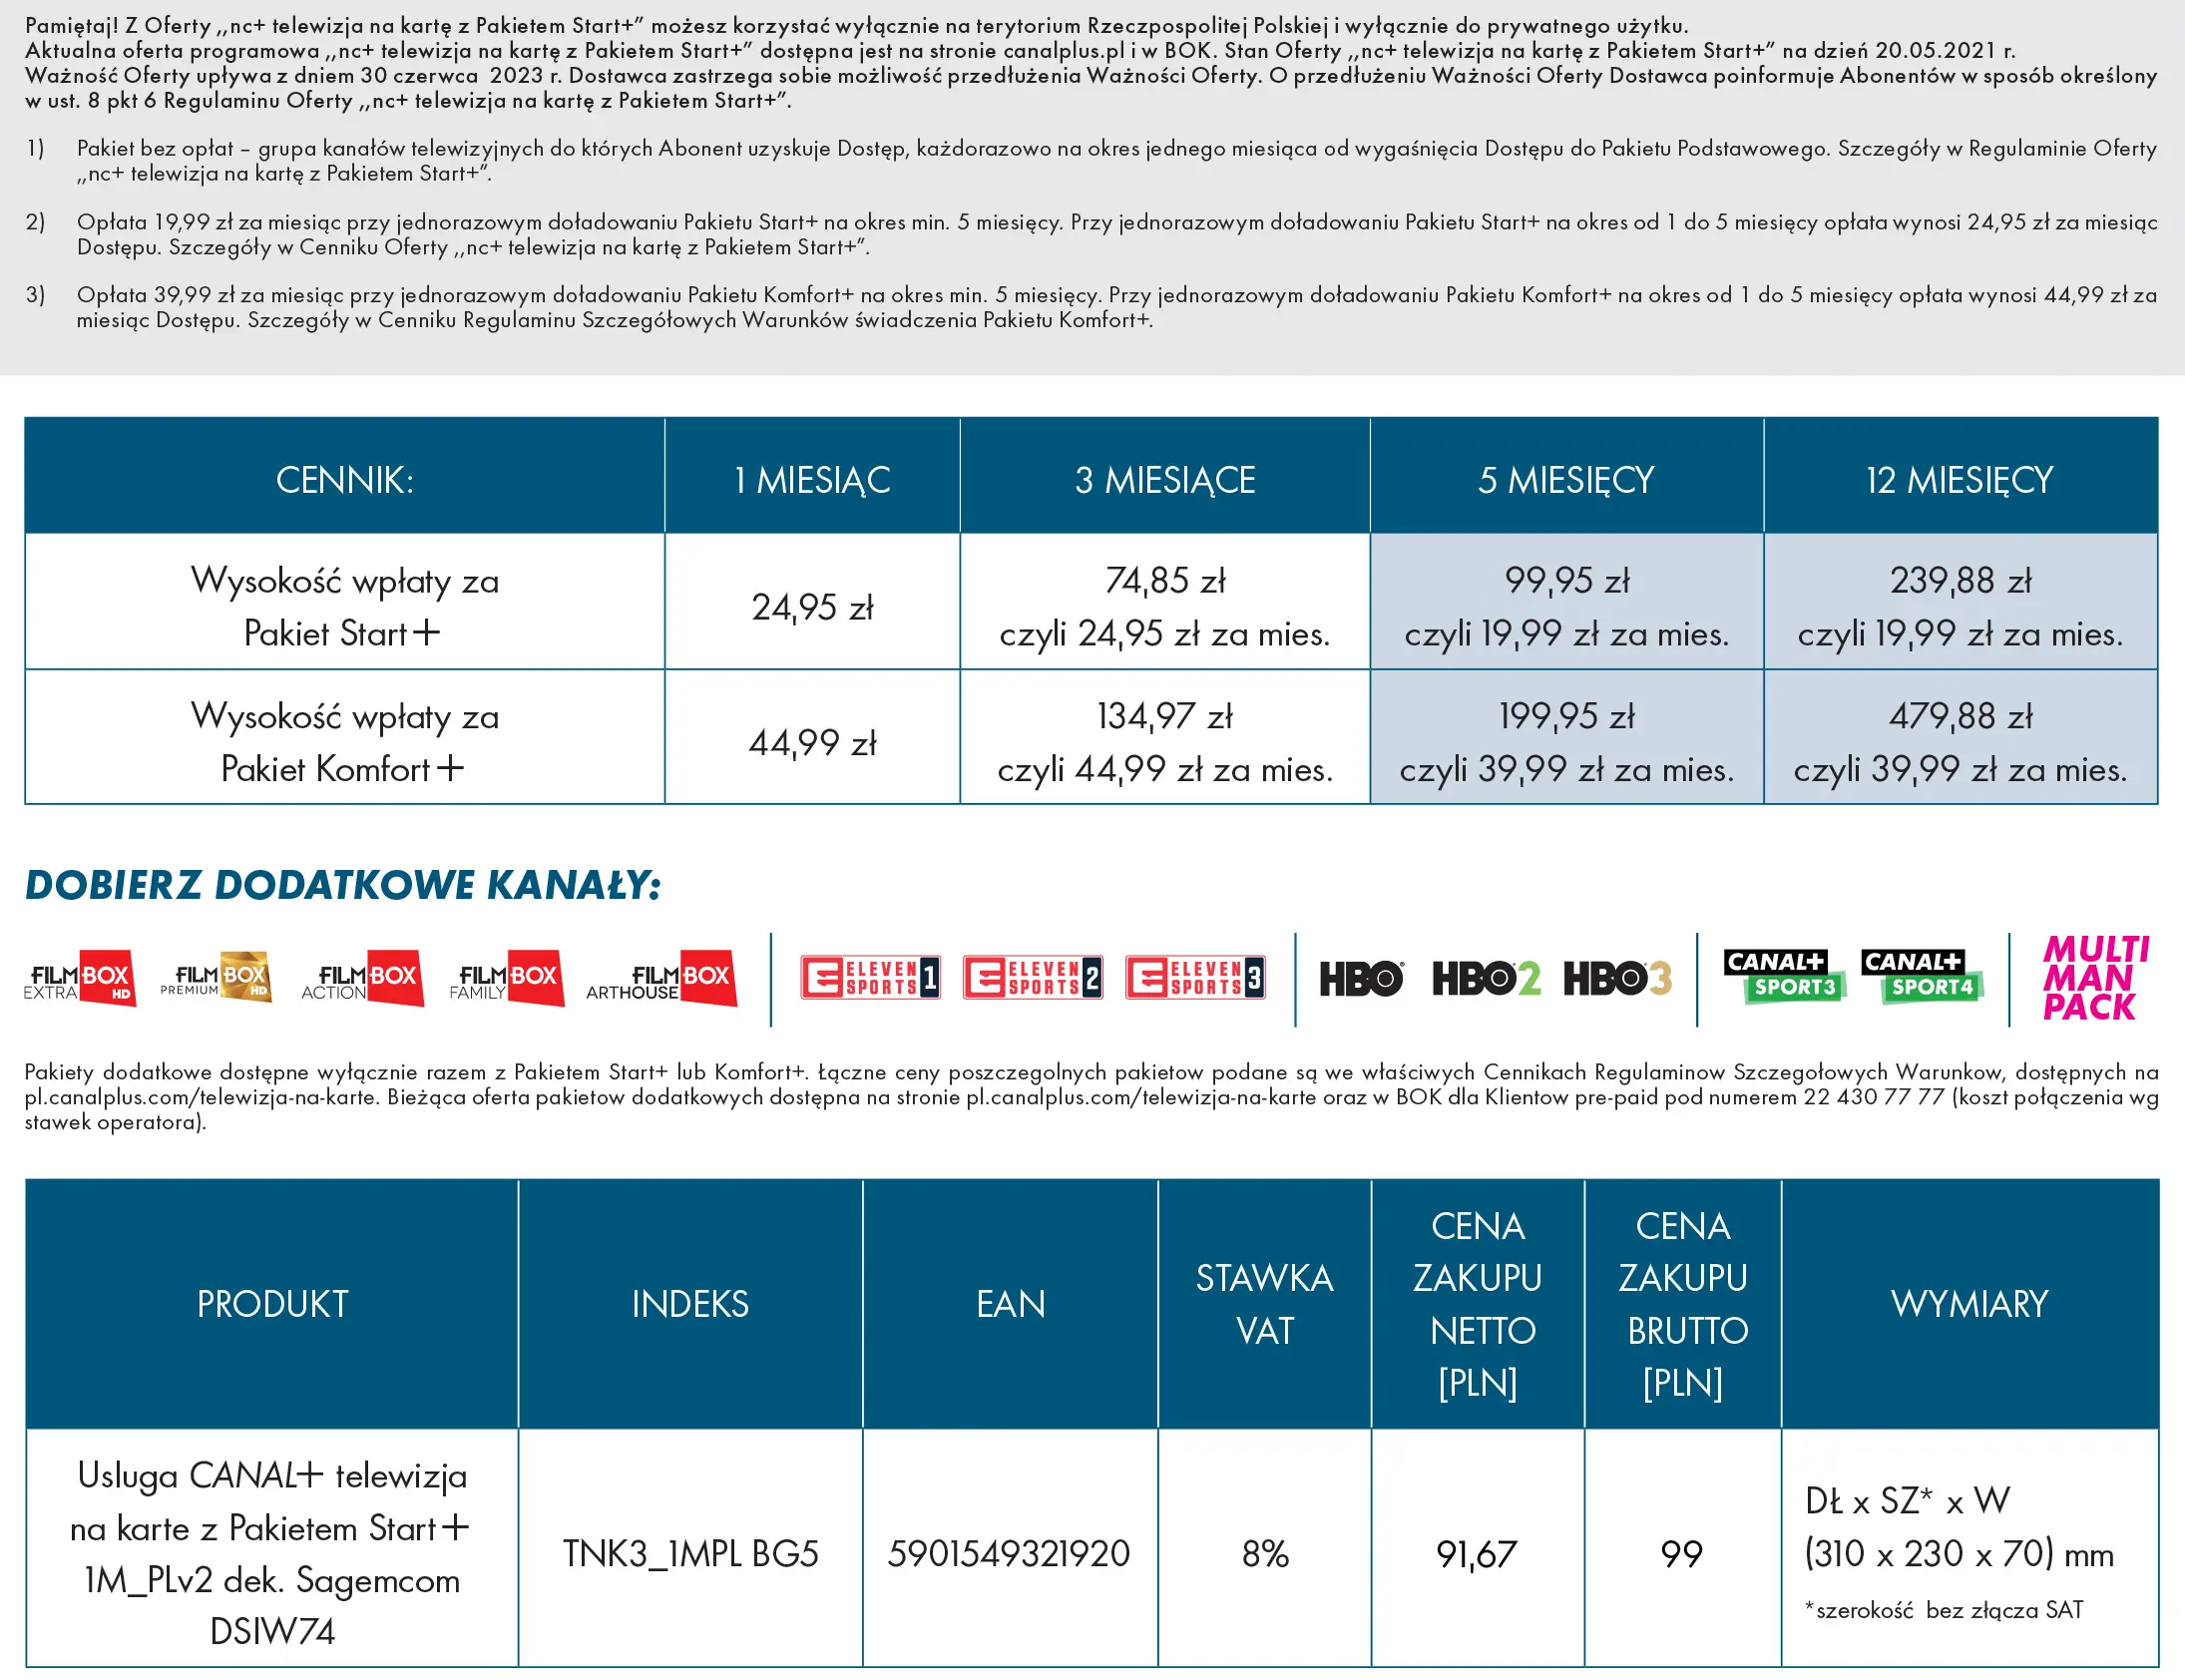 Usługa nc+ telewizja na kartę pakiet Start+ na 12 m-c - dekoder WIFIBOX+  SAGEMCOM DSIW74